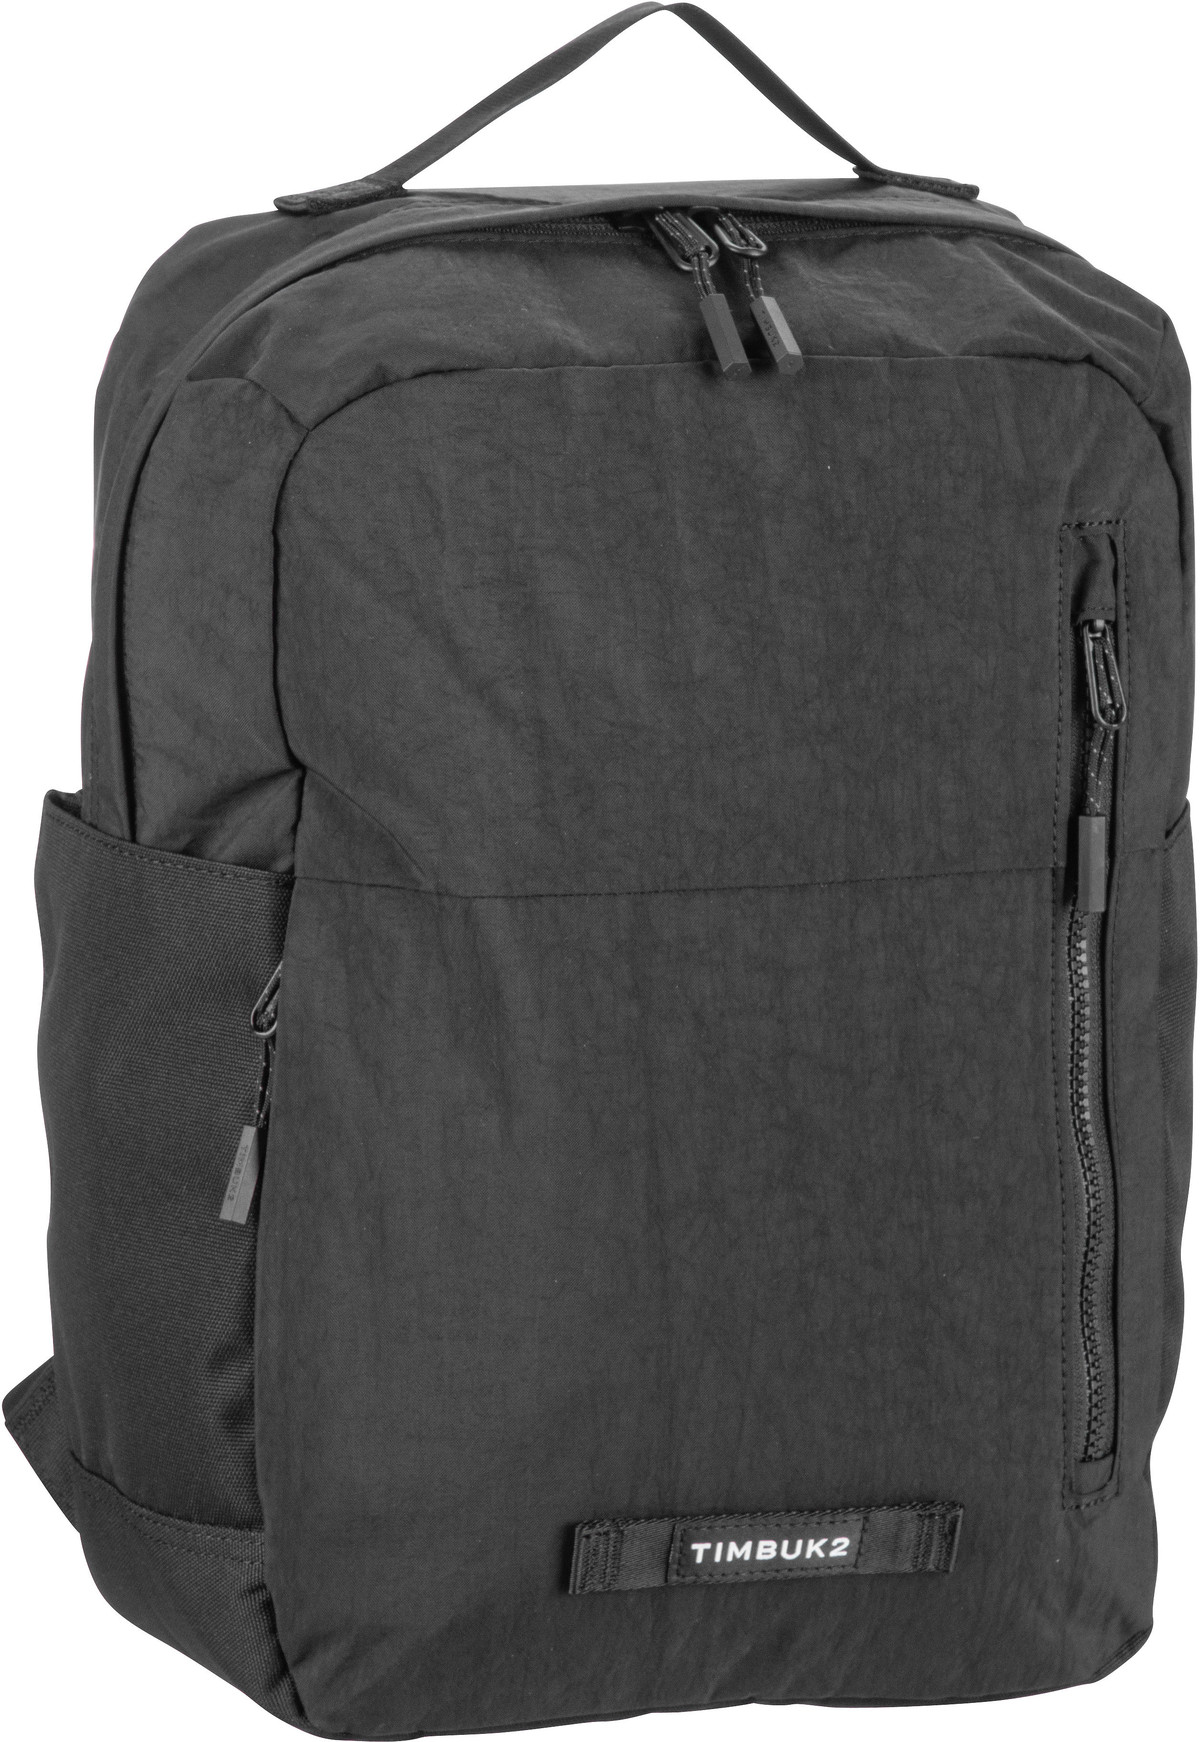 Timbuk2 Spirit Backpack Eco - Eco Black